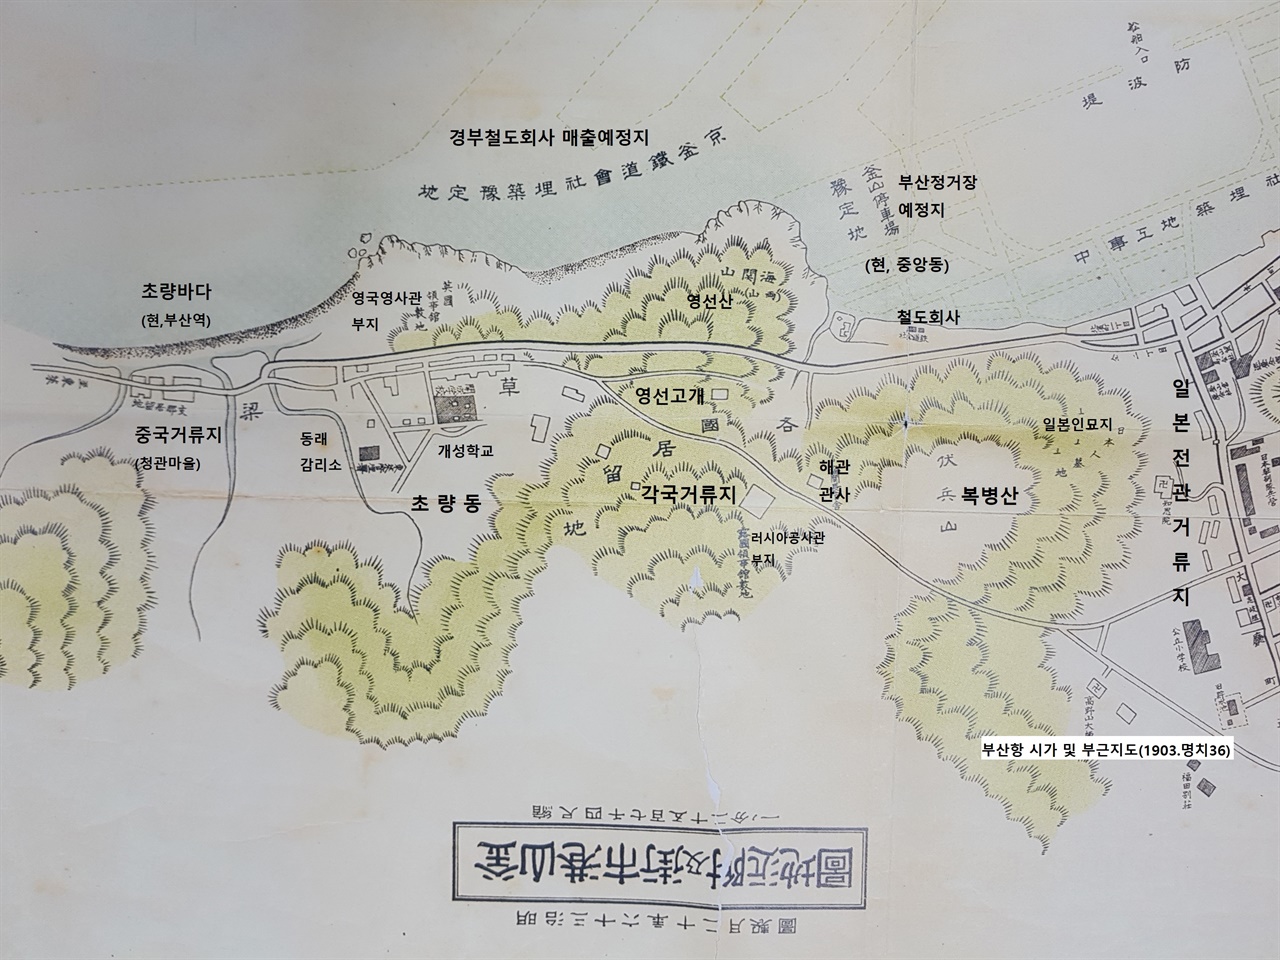 설문에서 일본전관거류지(초량왜관)까지의 지도 부분 - 출처 : 부산항 시가 및 부근지도(1903)>